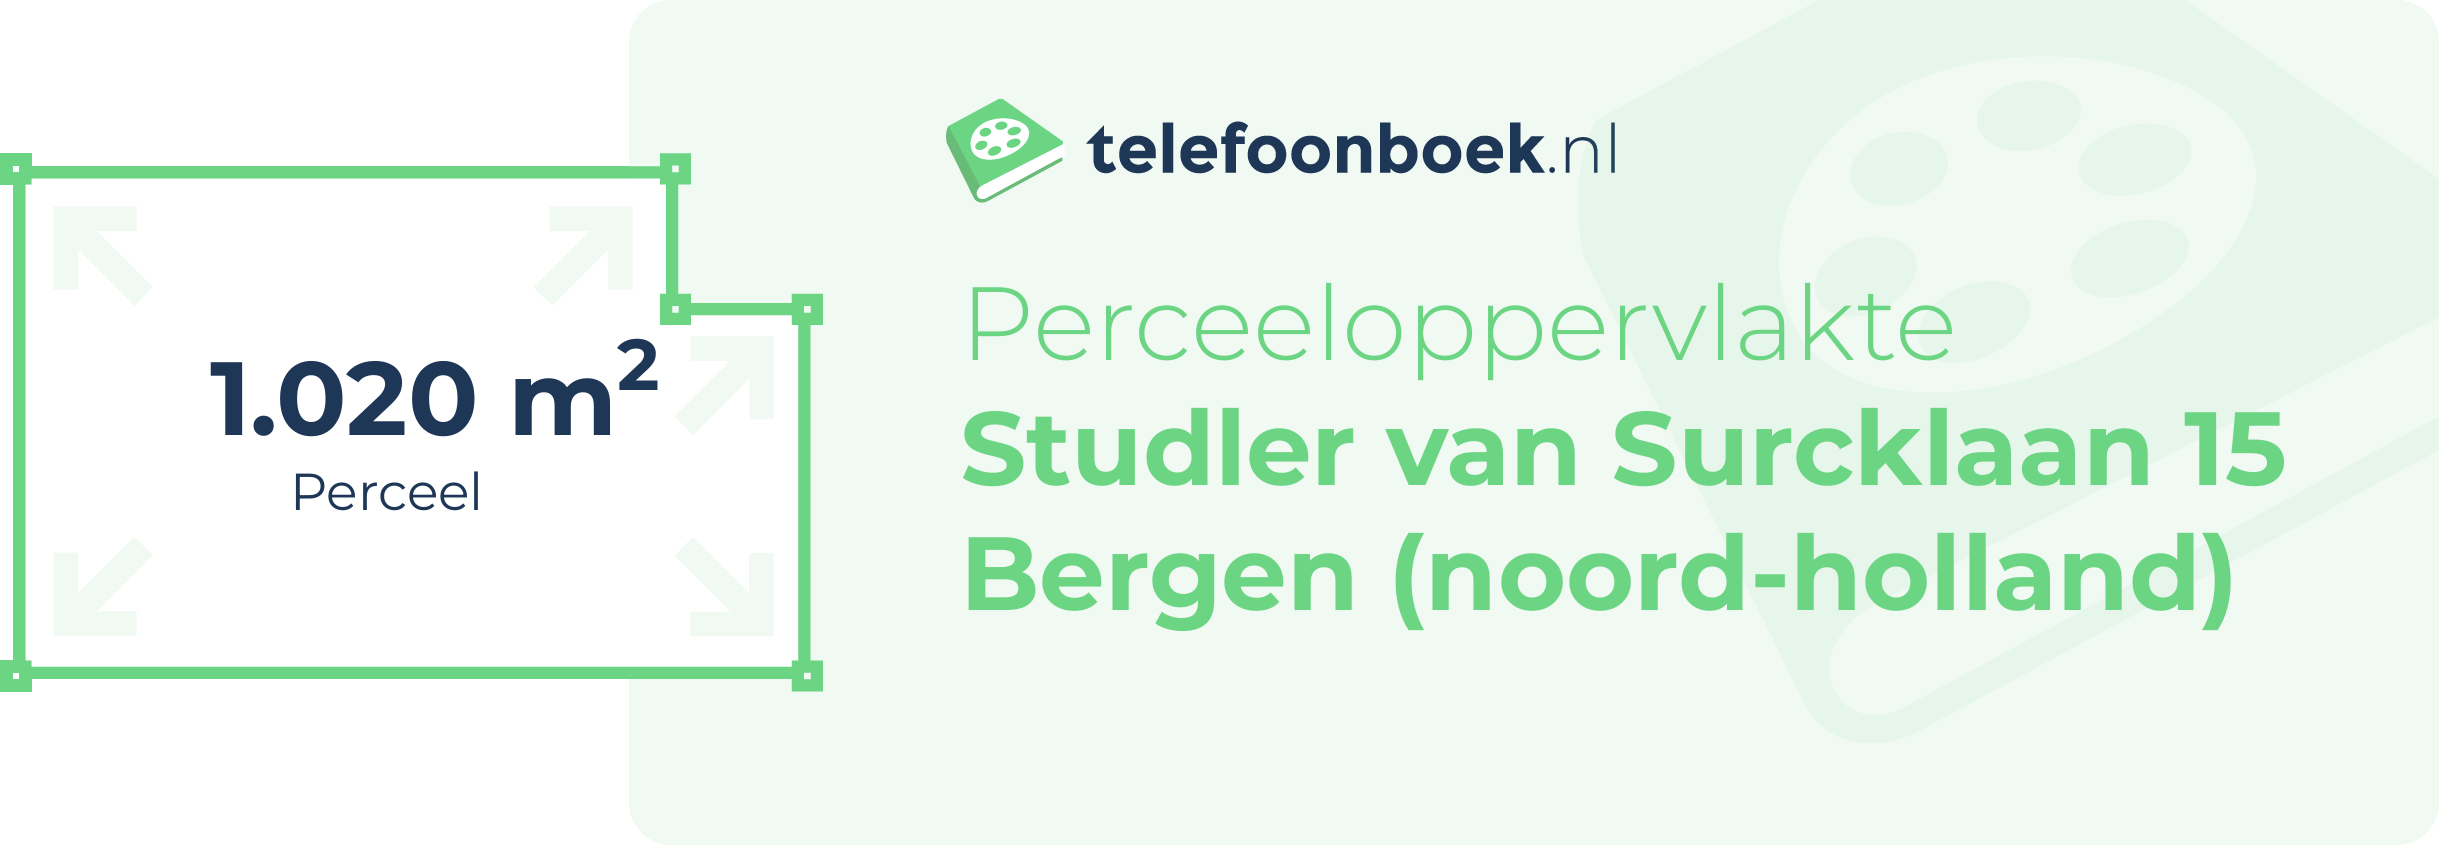 Perceeloppervlakte Studler Van Surcklaan 15 Bergen (Noord-Holland)